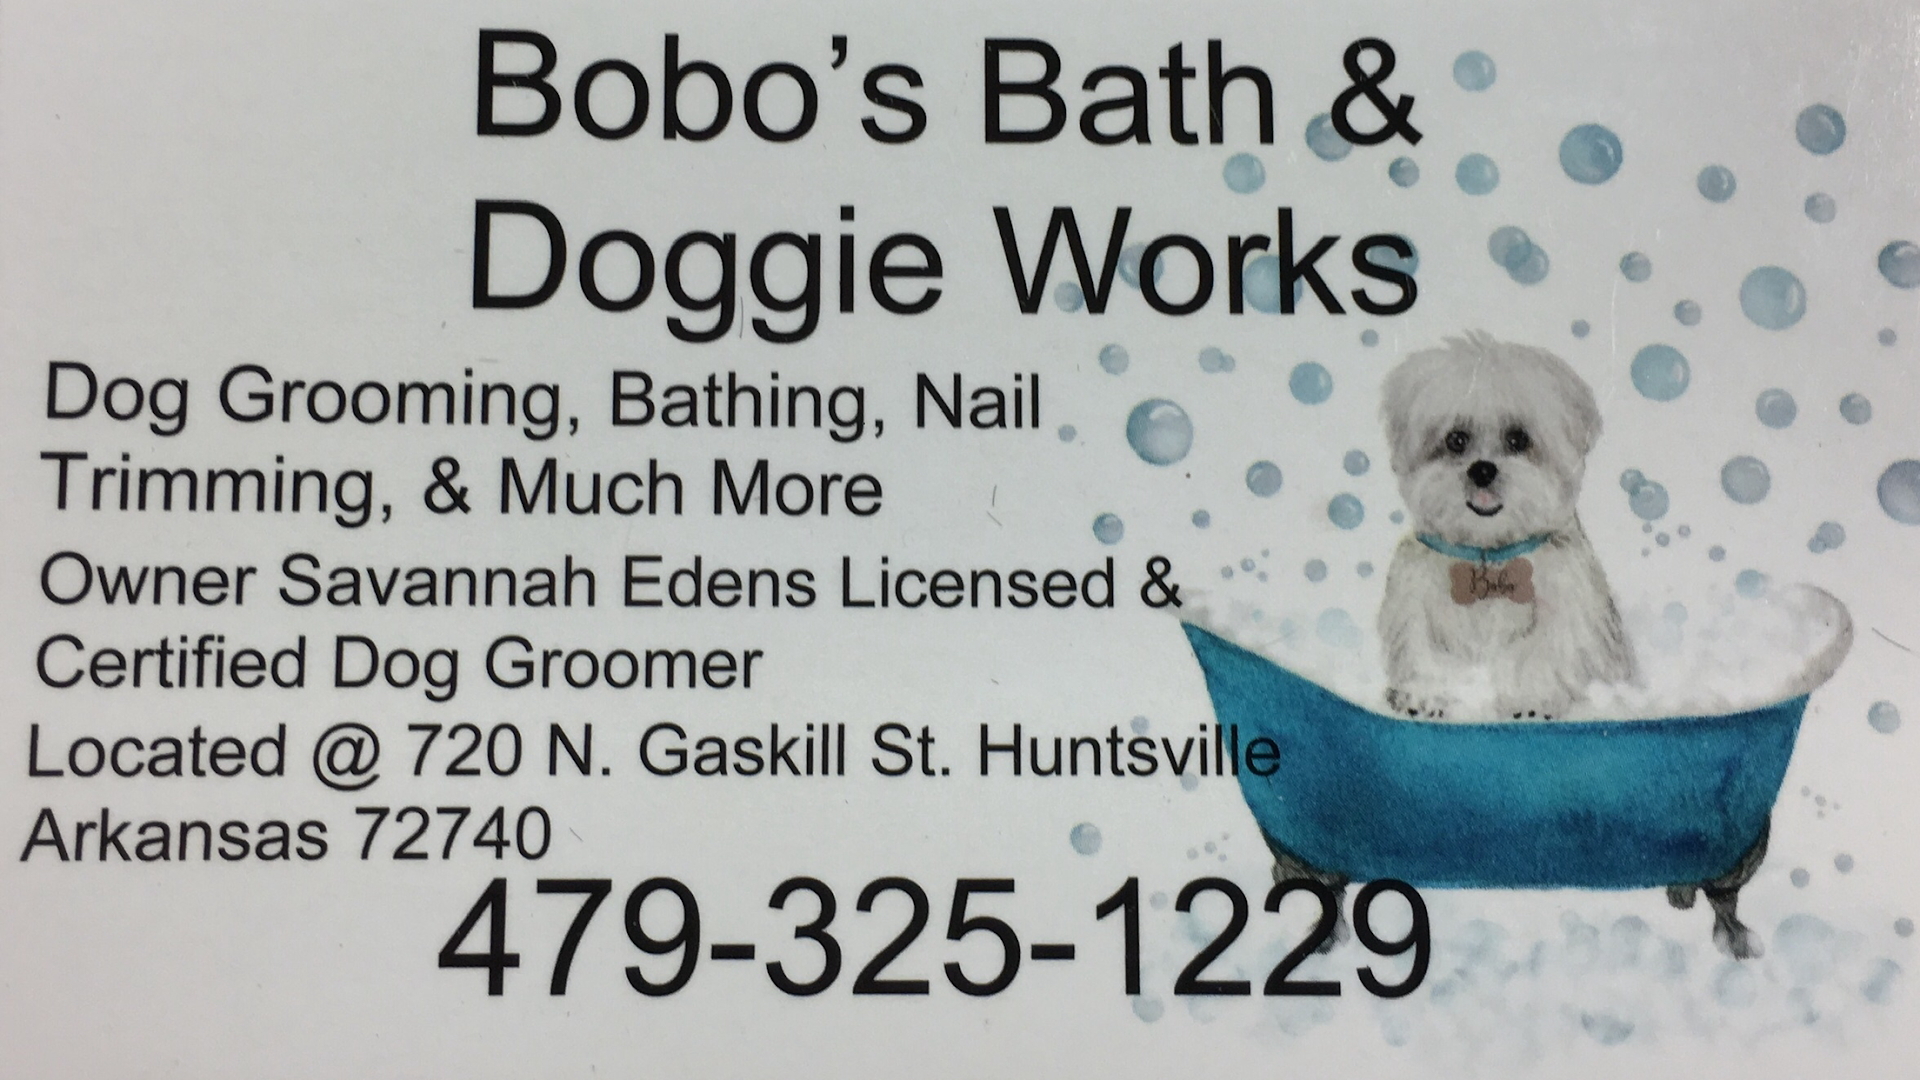 Bobo’s Bath & Doggie Works